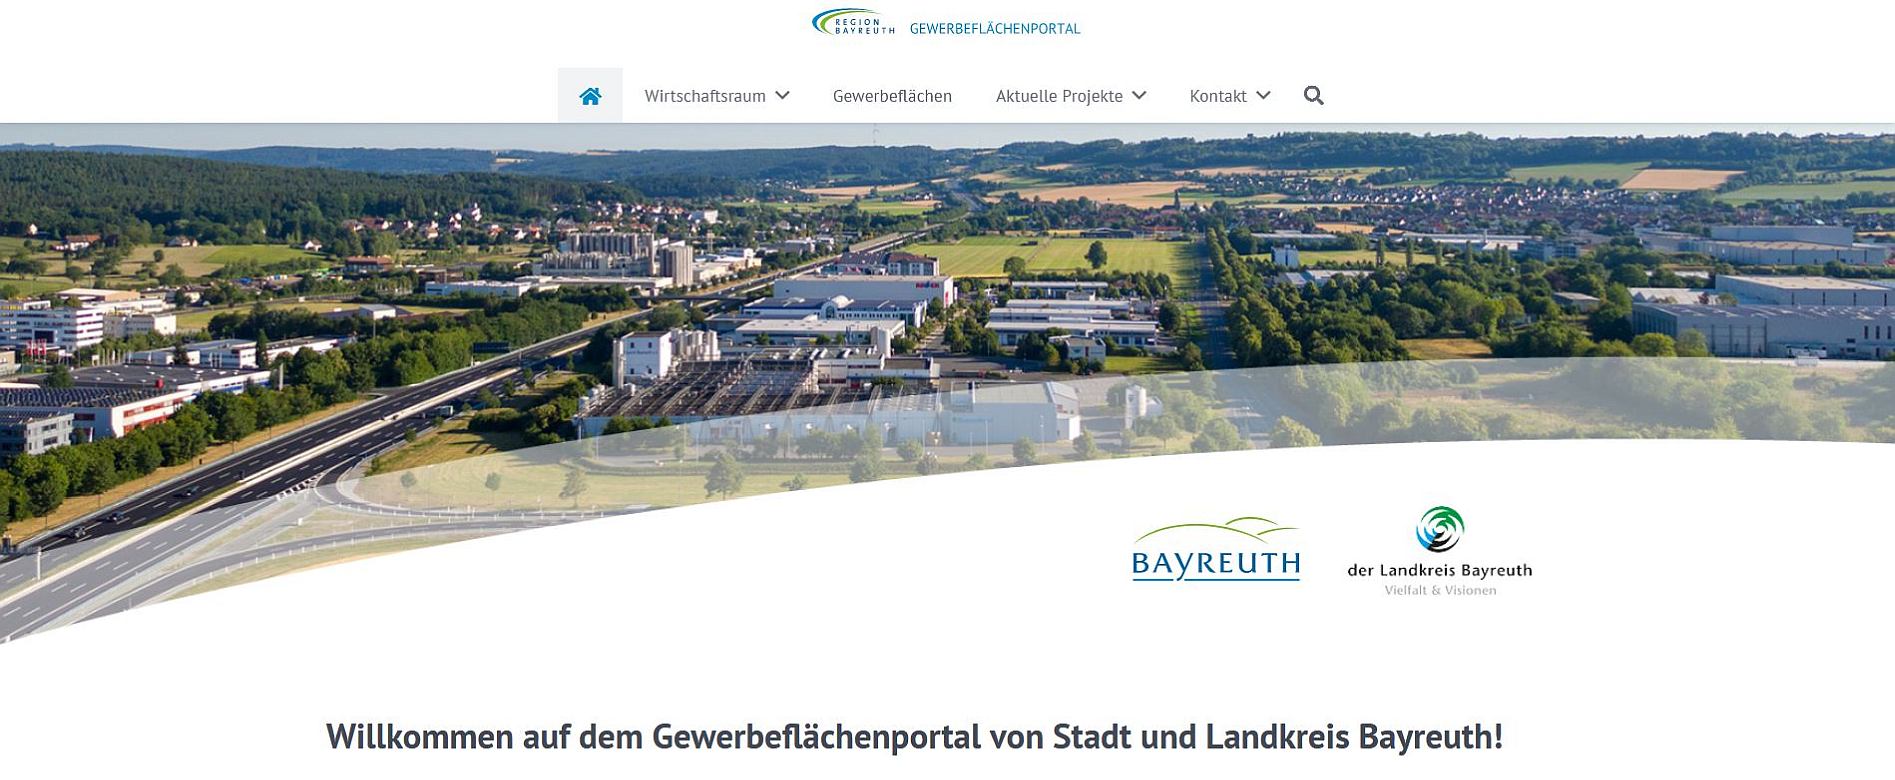 Titelbild der Internetseite "Gewerbeflächenportal Region Bayreuth"